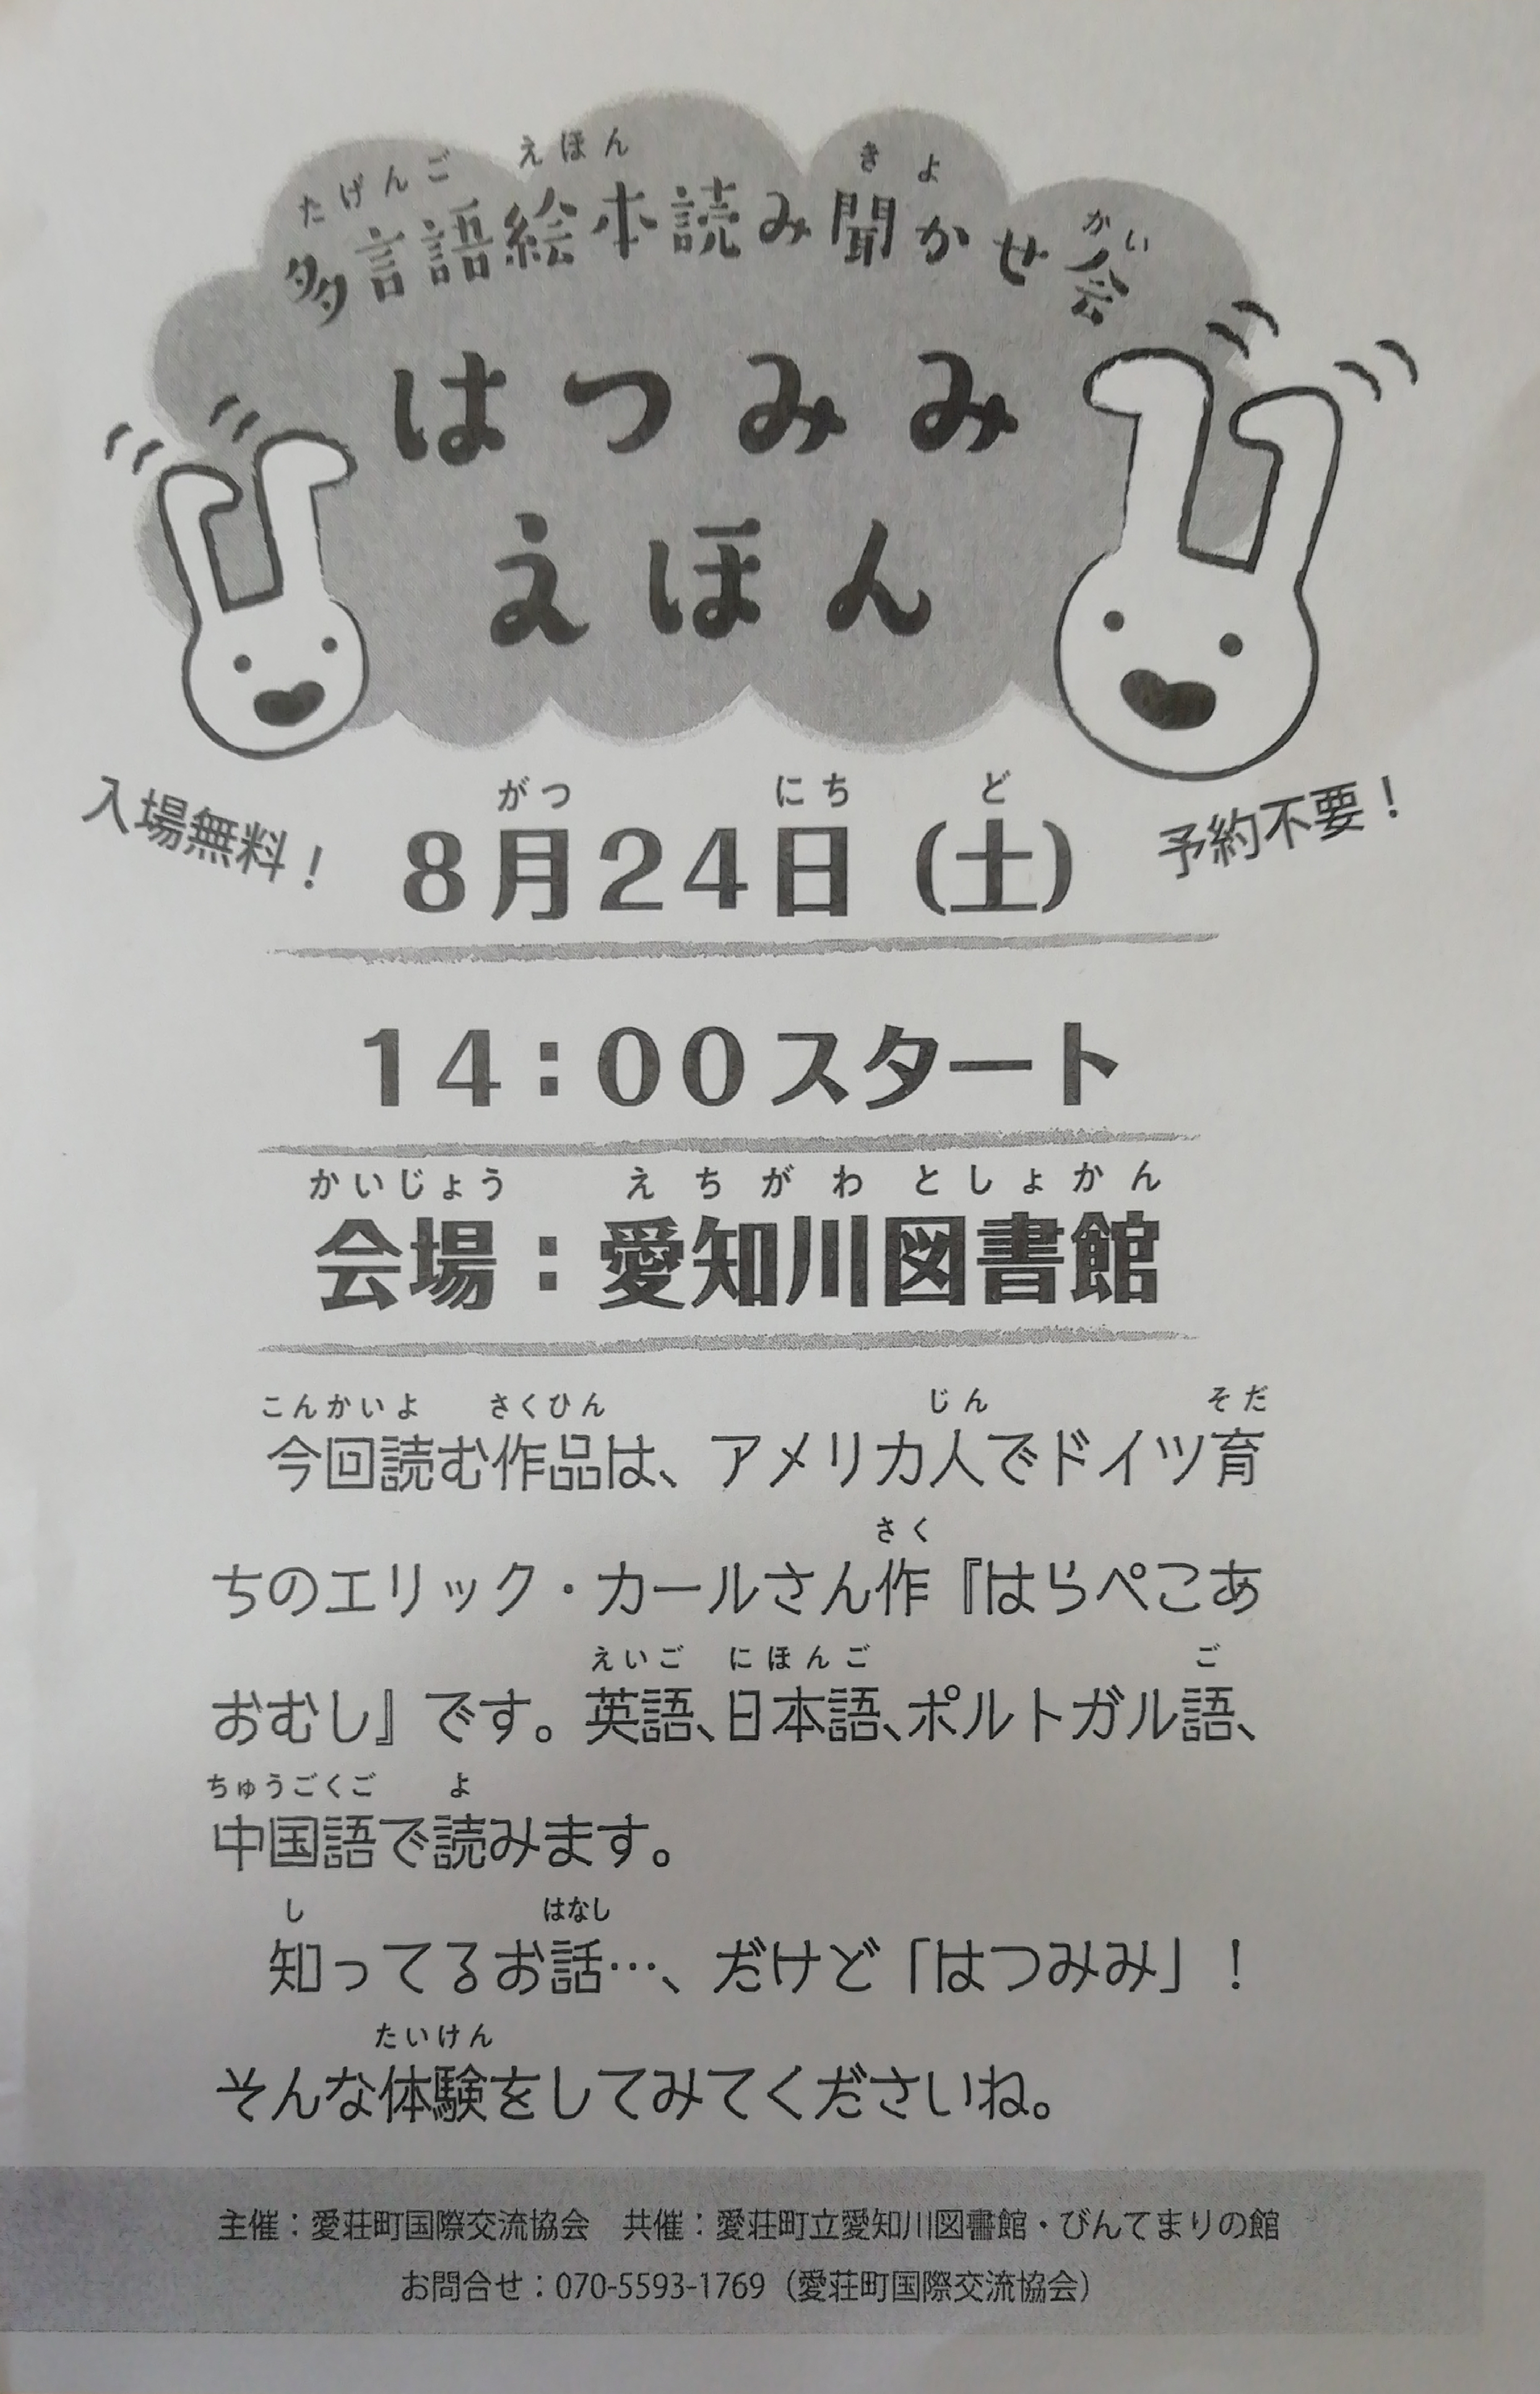 8月24日 愛知川図書館で はつみみえほん が開催 色んな国の言葉で絵本を楽しもう 滋賀のママがイベント 育児 遊び 学びを発信 シガマンマ ピースマム